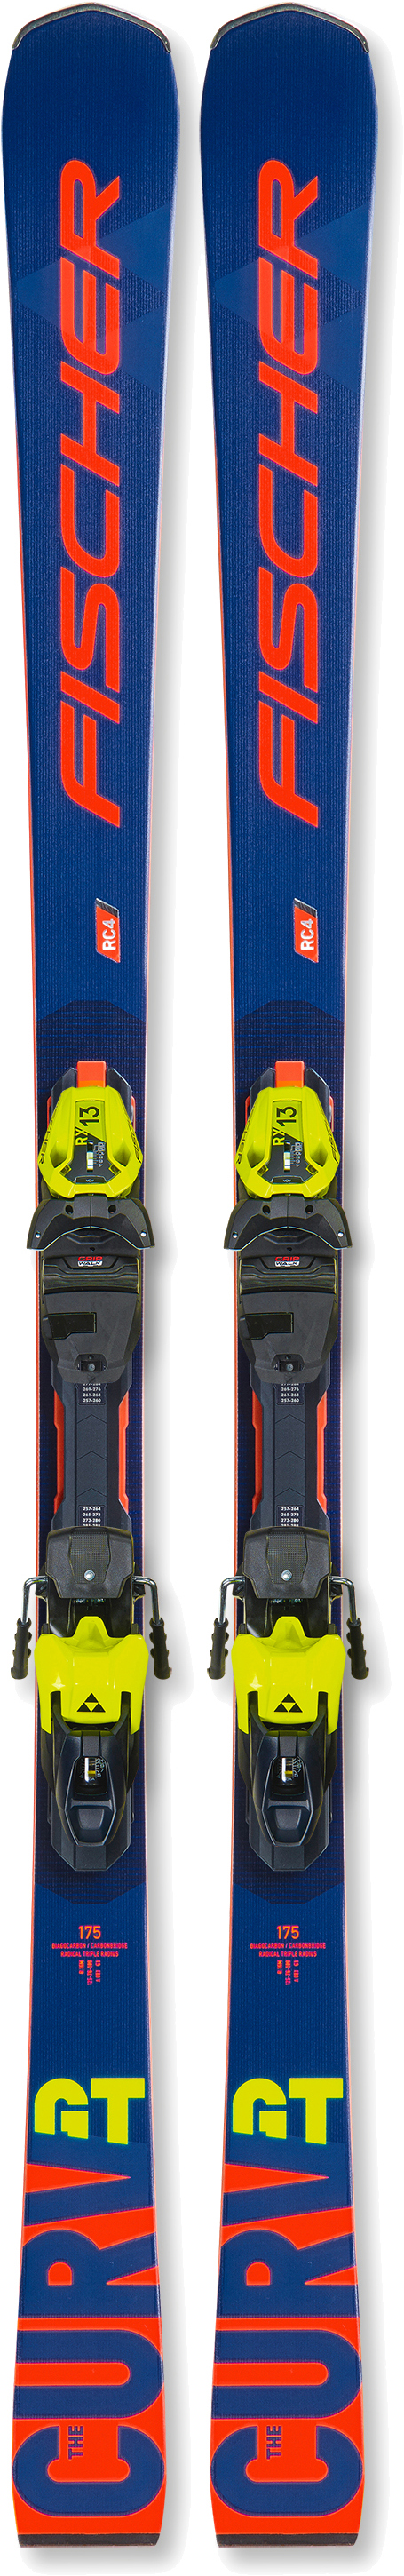 Универсальные лыжи Fischer The Curv GT MT + RX 13 PR T20021 175 см